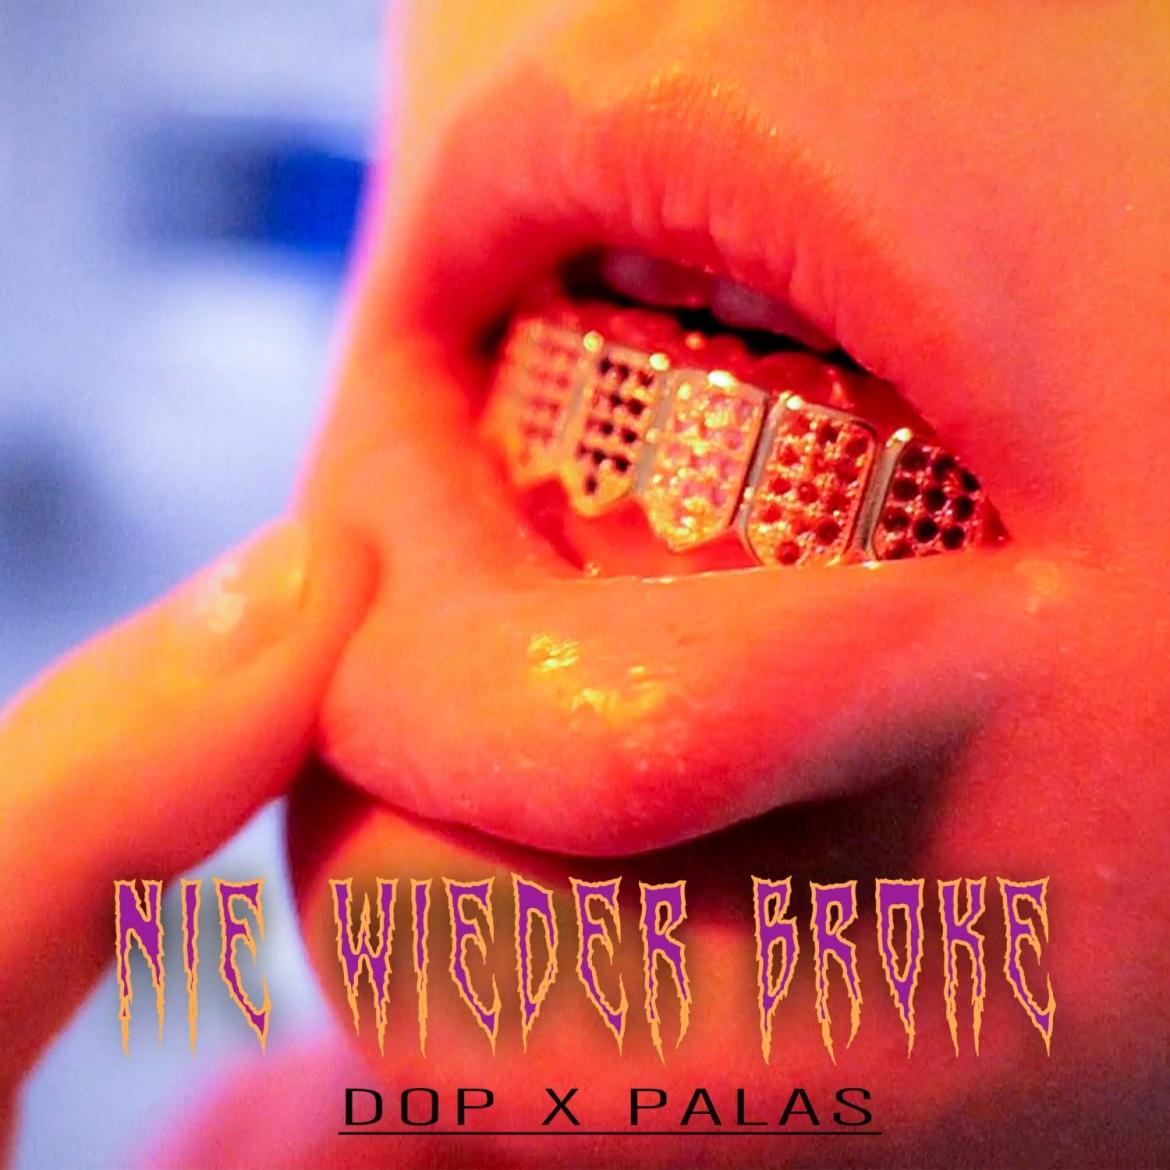 PALAS x DOP - Nie wieder broke (Cover)